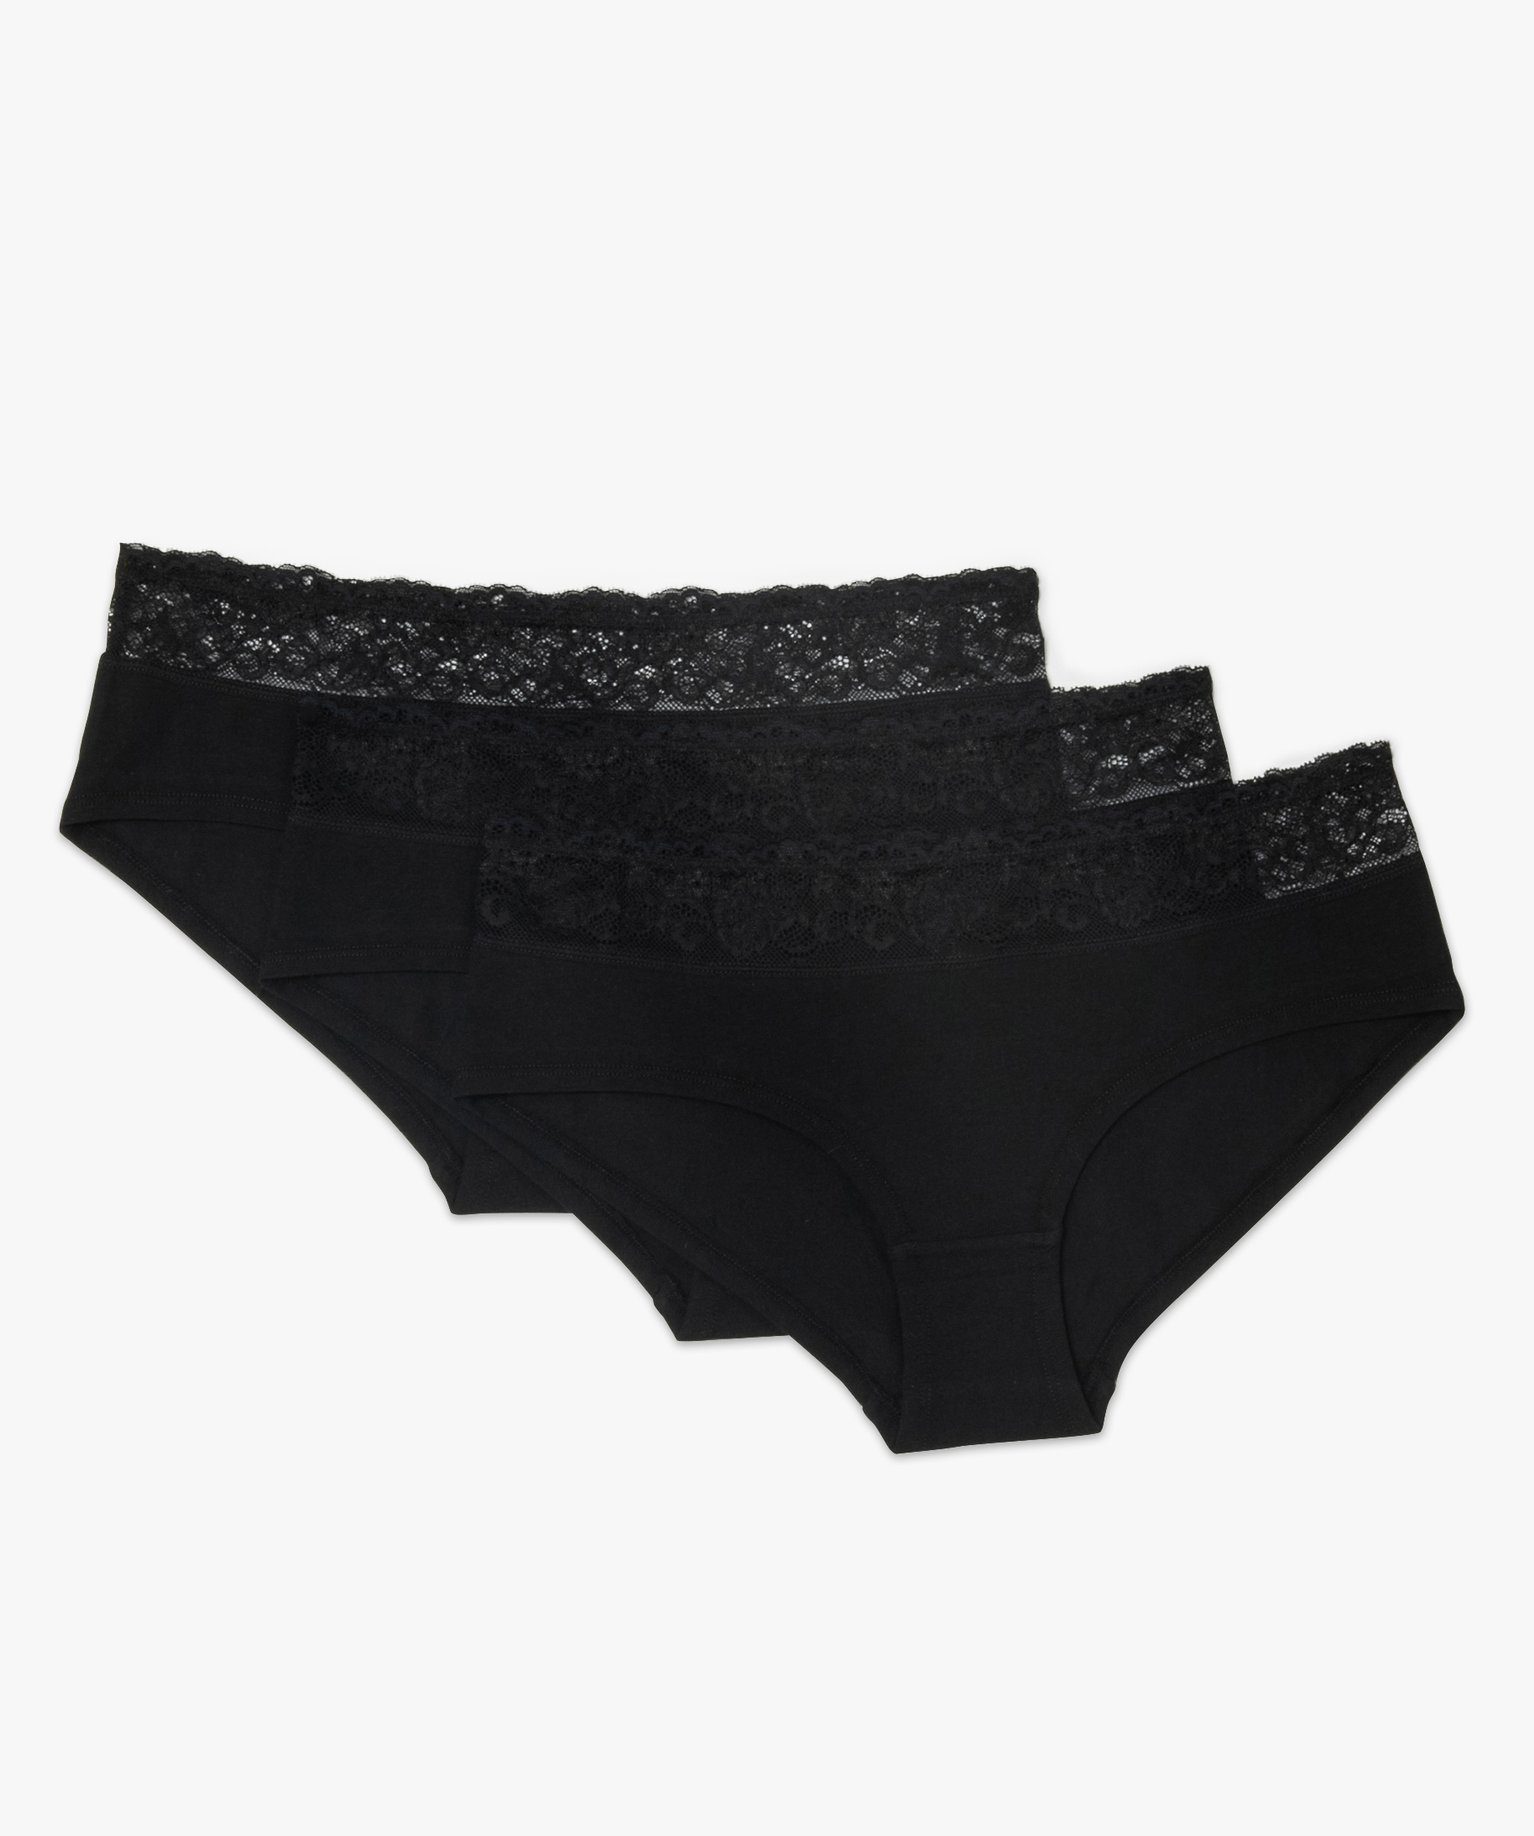 Gemo lingerie shorty femme a taille en dentelle avec coton bio (lot de 3)  noir shorties femme